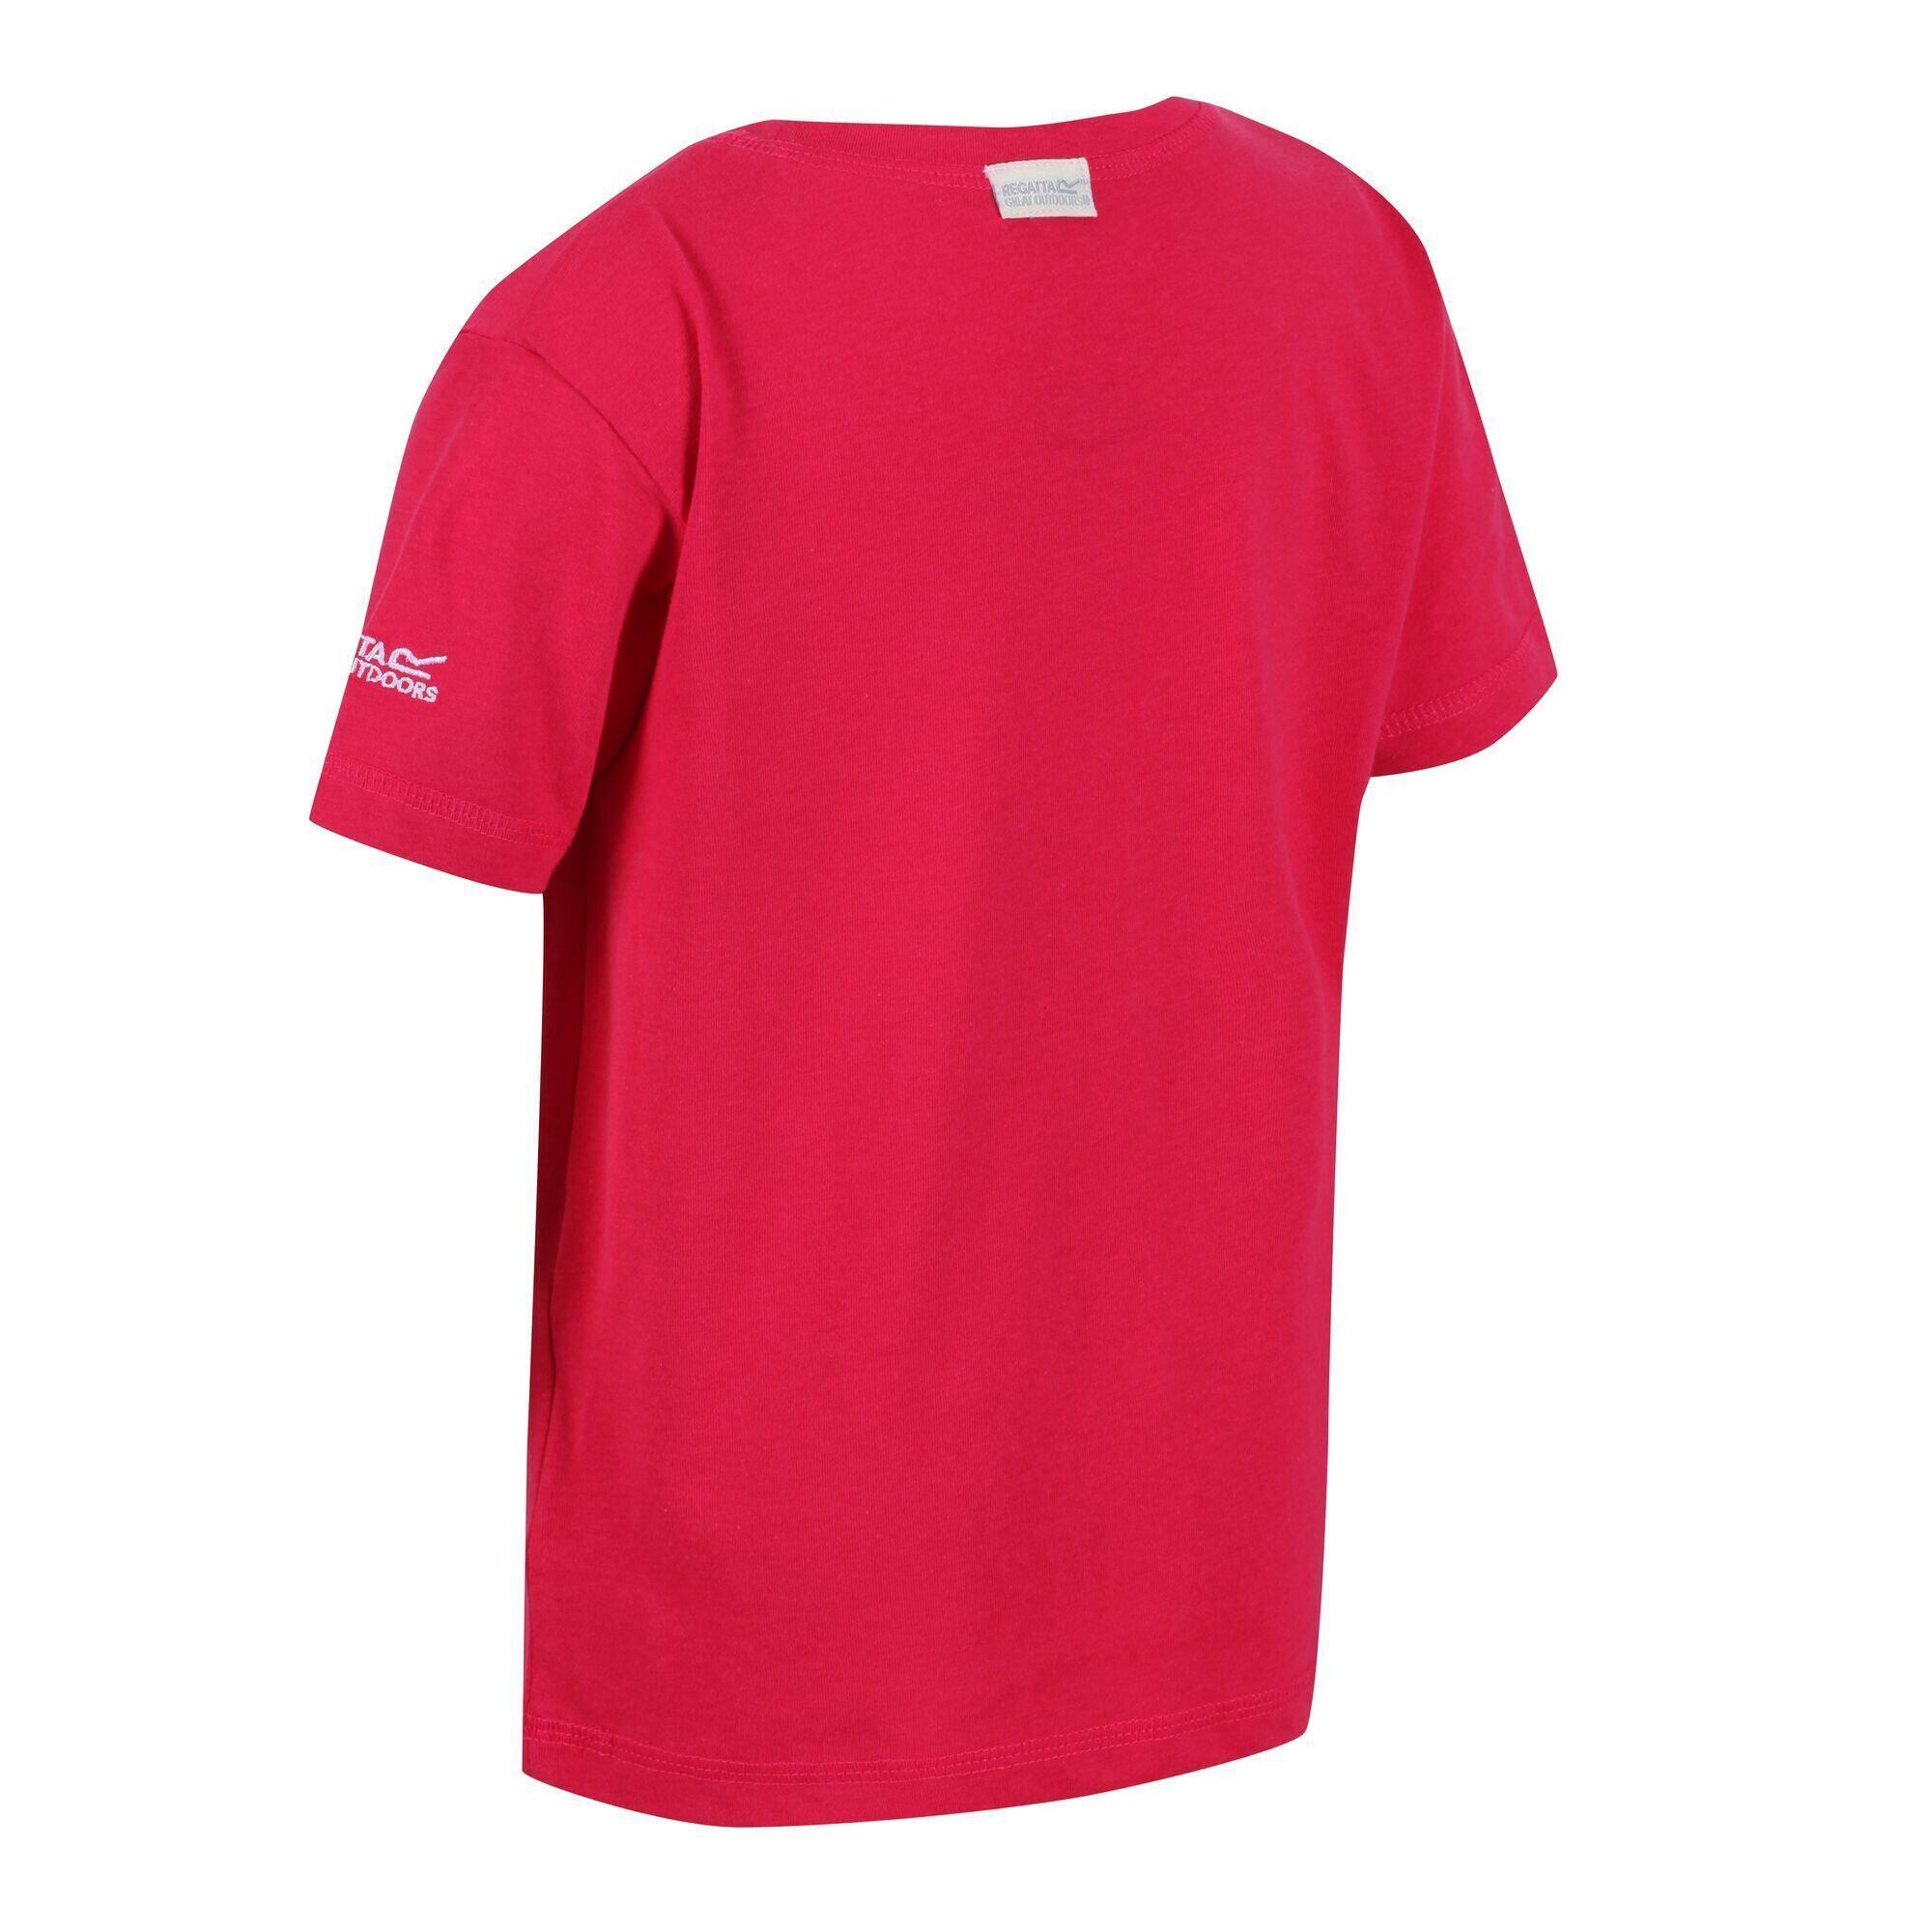 Childrens/Kids Peppa Pig Printed ShortSleeved TShirt (Bright Blush) 4/5